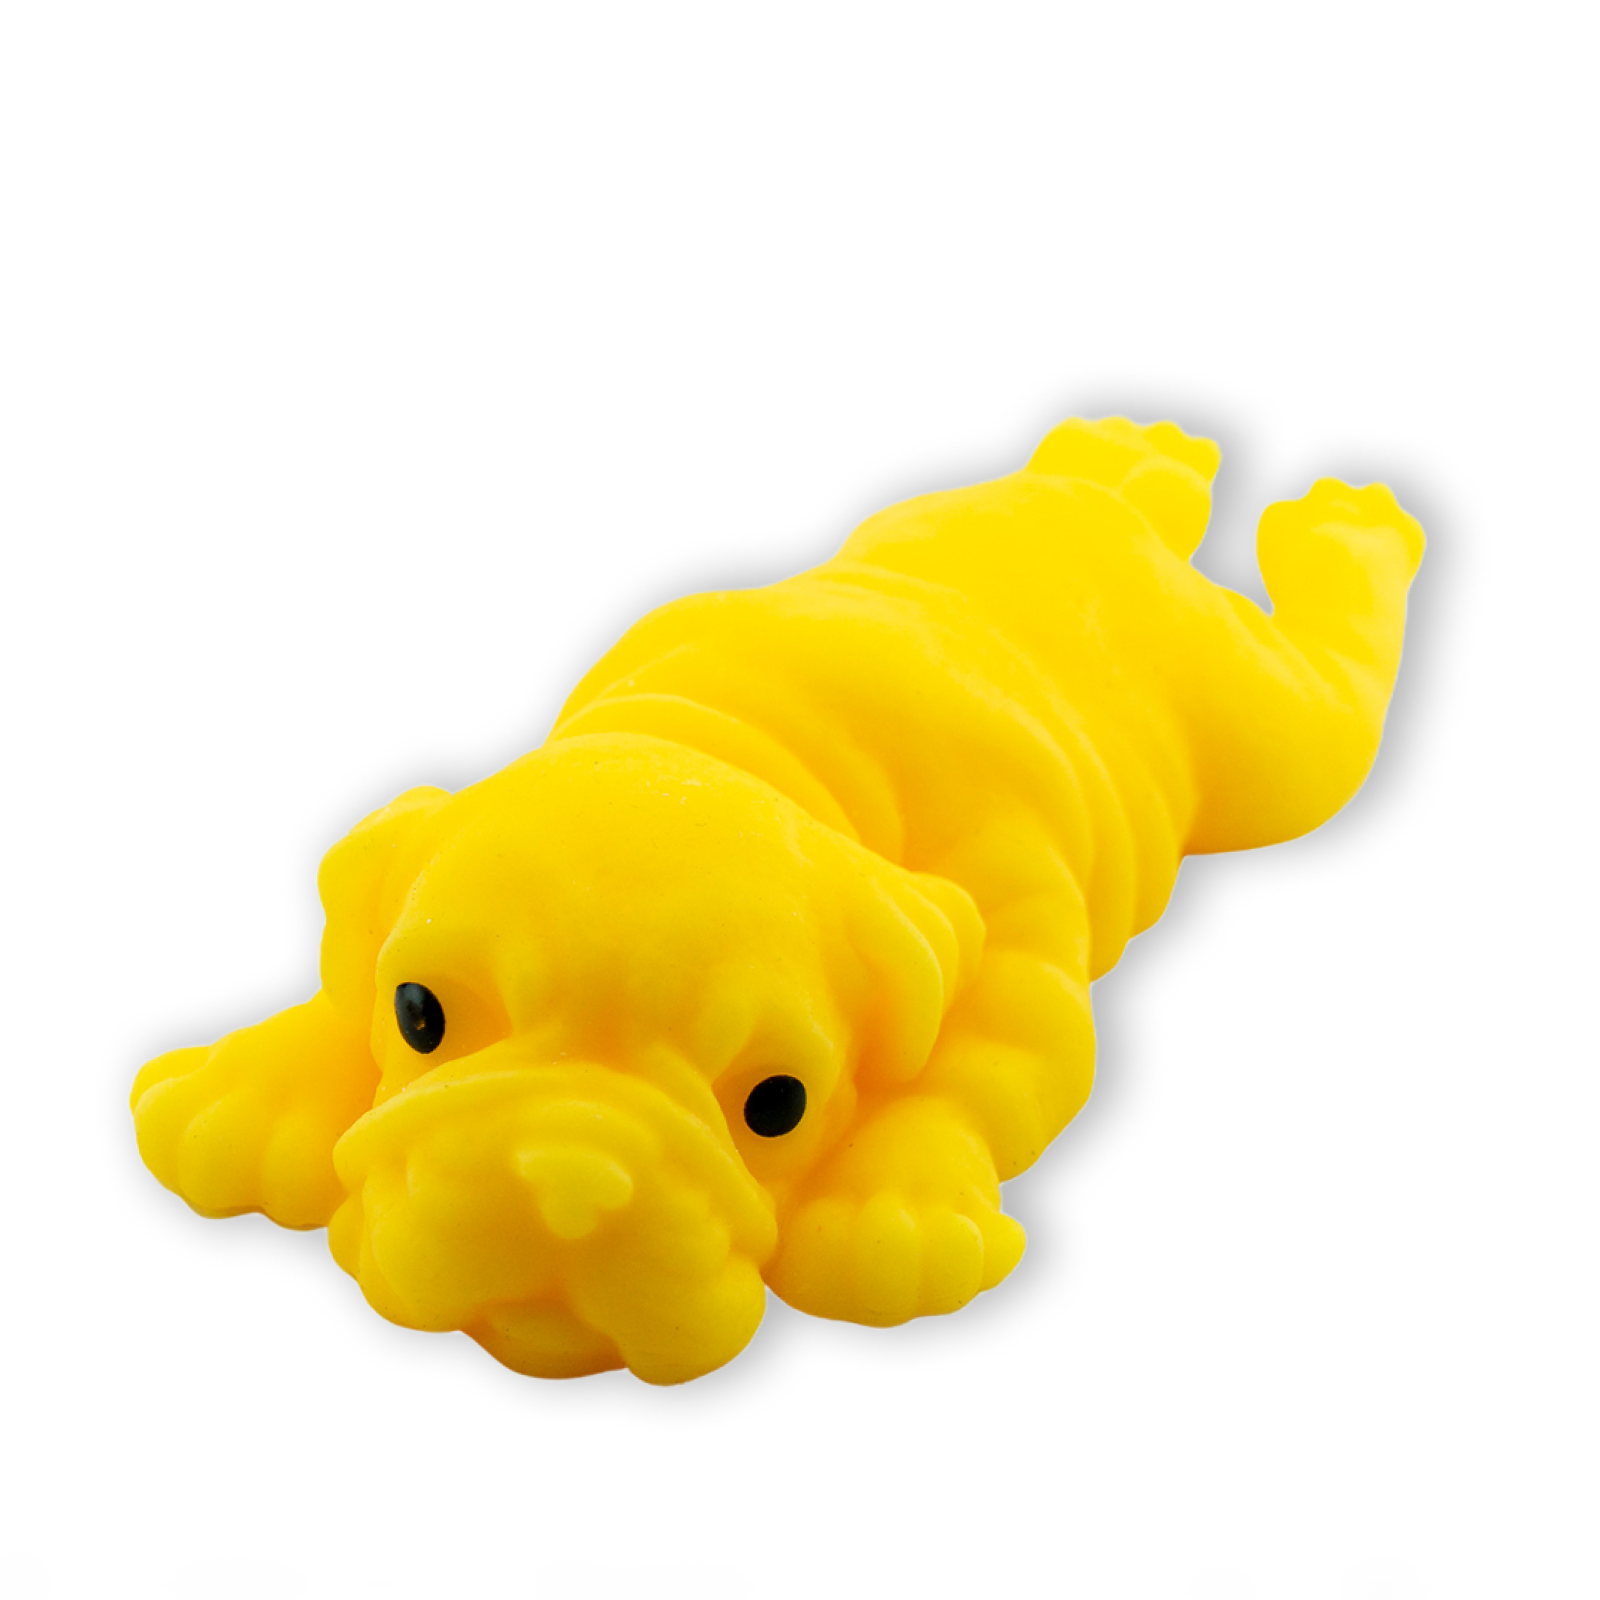 Сквиш антистресс Mr Sunмопс лизун желтый игрушка мяч антистресс сквиш жми мни тяни эластичный желтый